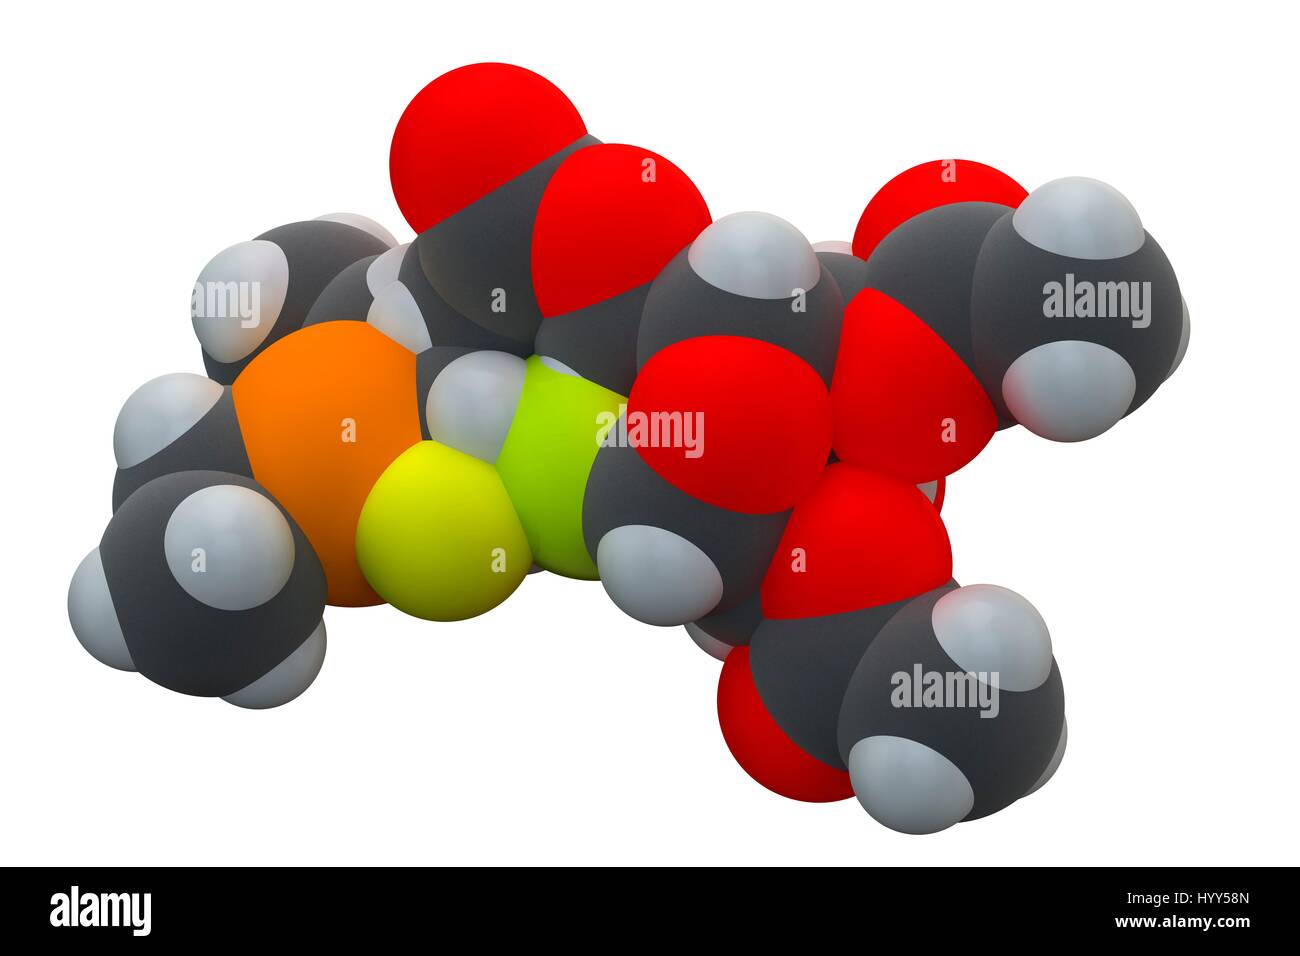 Auranofin molécule pharmaceutique. Auranofin, commercialisé sous le nom de Ridaura, est un complexe d'or(I) classés par l'Organisation mondiale de la santé en tant qu'un agent. Il est utilisé pour traiter la polyarthrite rhumatoïde, mais aussi intéressant et a des yeux effets antiviraux. La formule chimique est C20H34AuO9PS. Les atomes sont représentés comme des sphères : le carbone (gris), l'hydrogène (blanc), l'oxygène (rouge), le phosphore (orange), or (jaune) et de soufre (vert). L'illustration. Banque D'Images